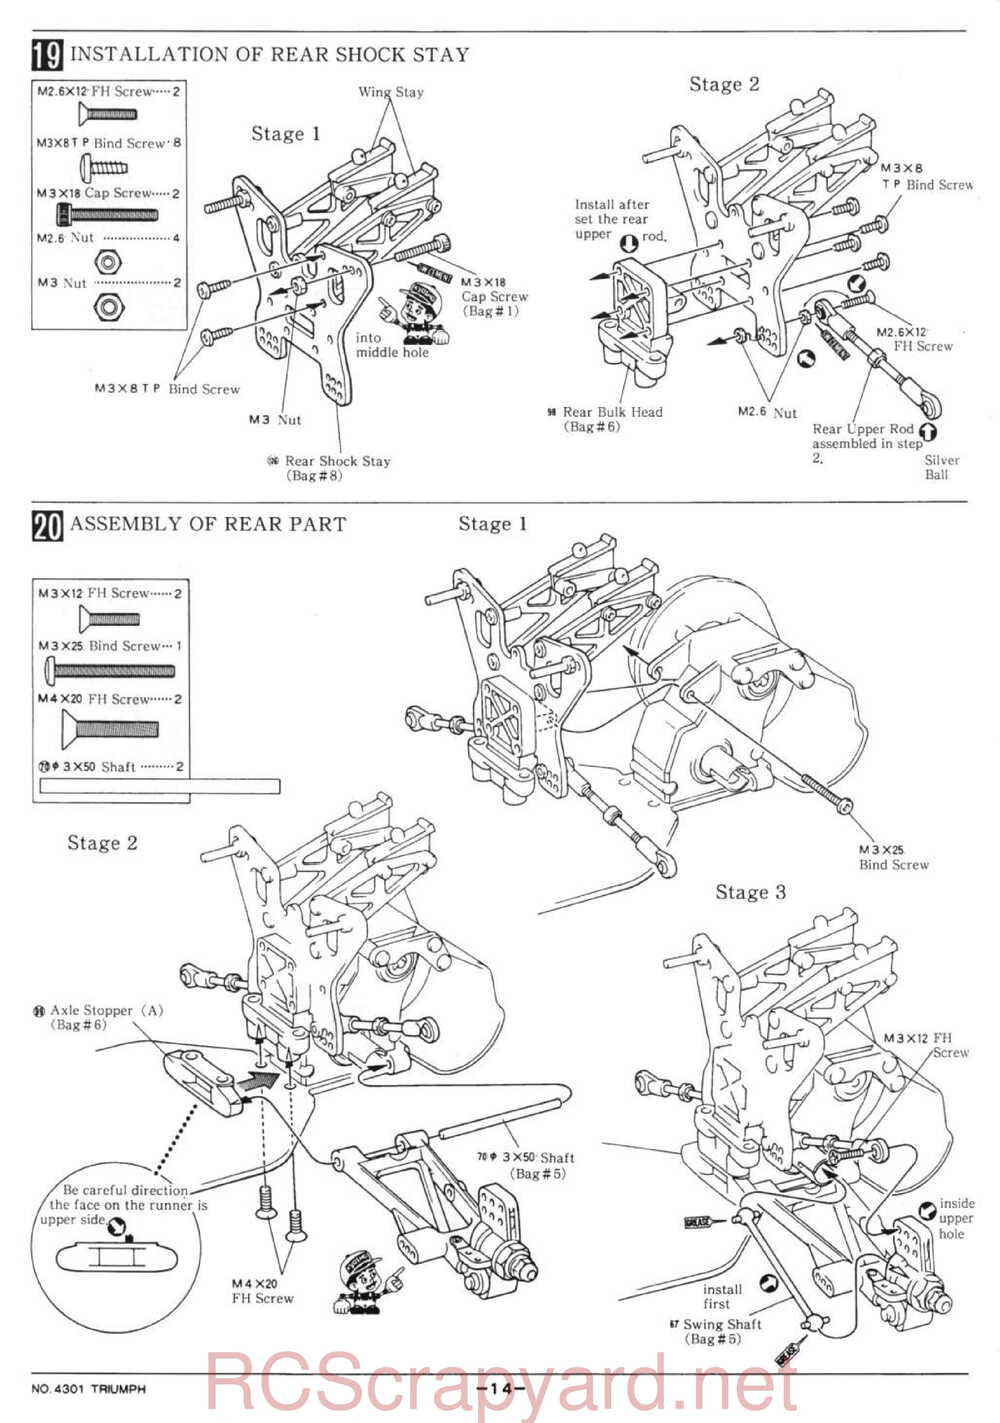 Kyosho - 4301 - Triumph - Manual - Page 14